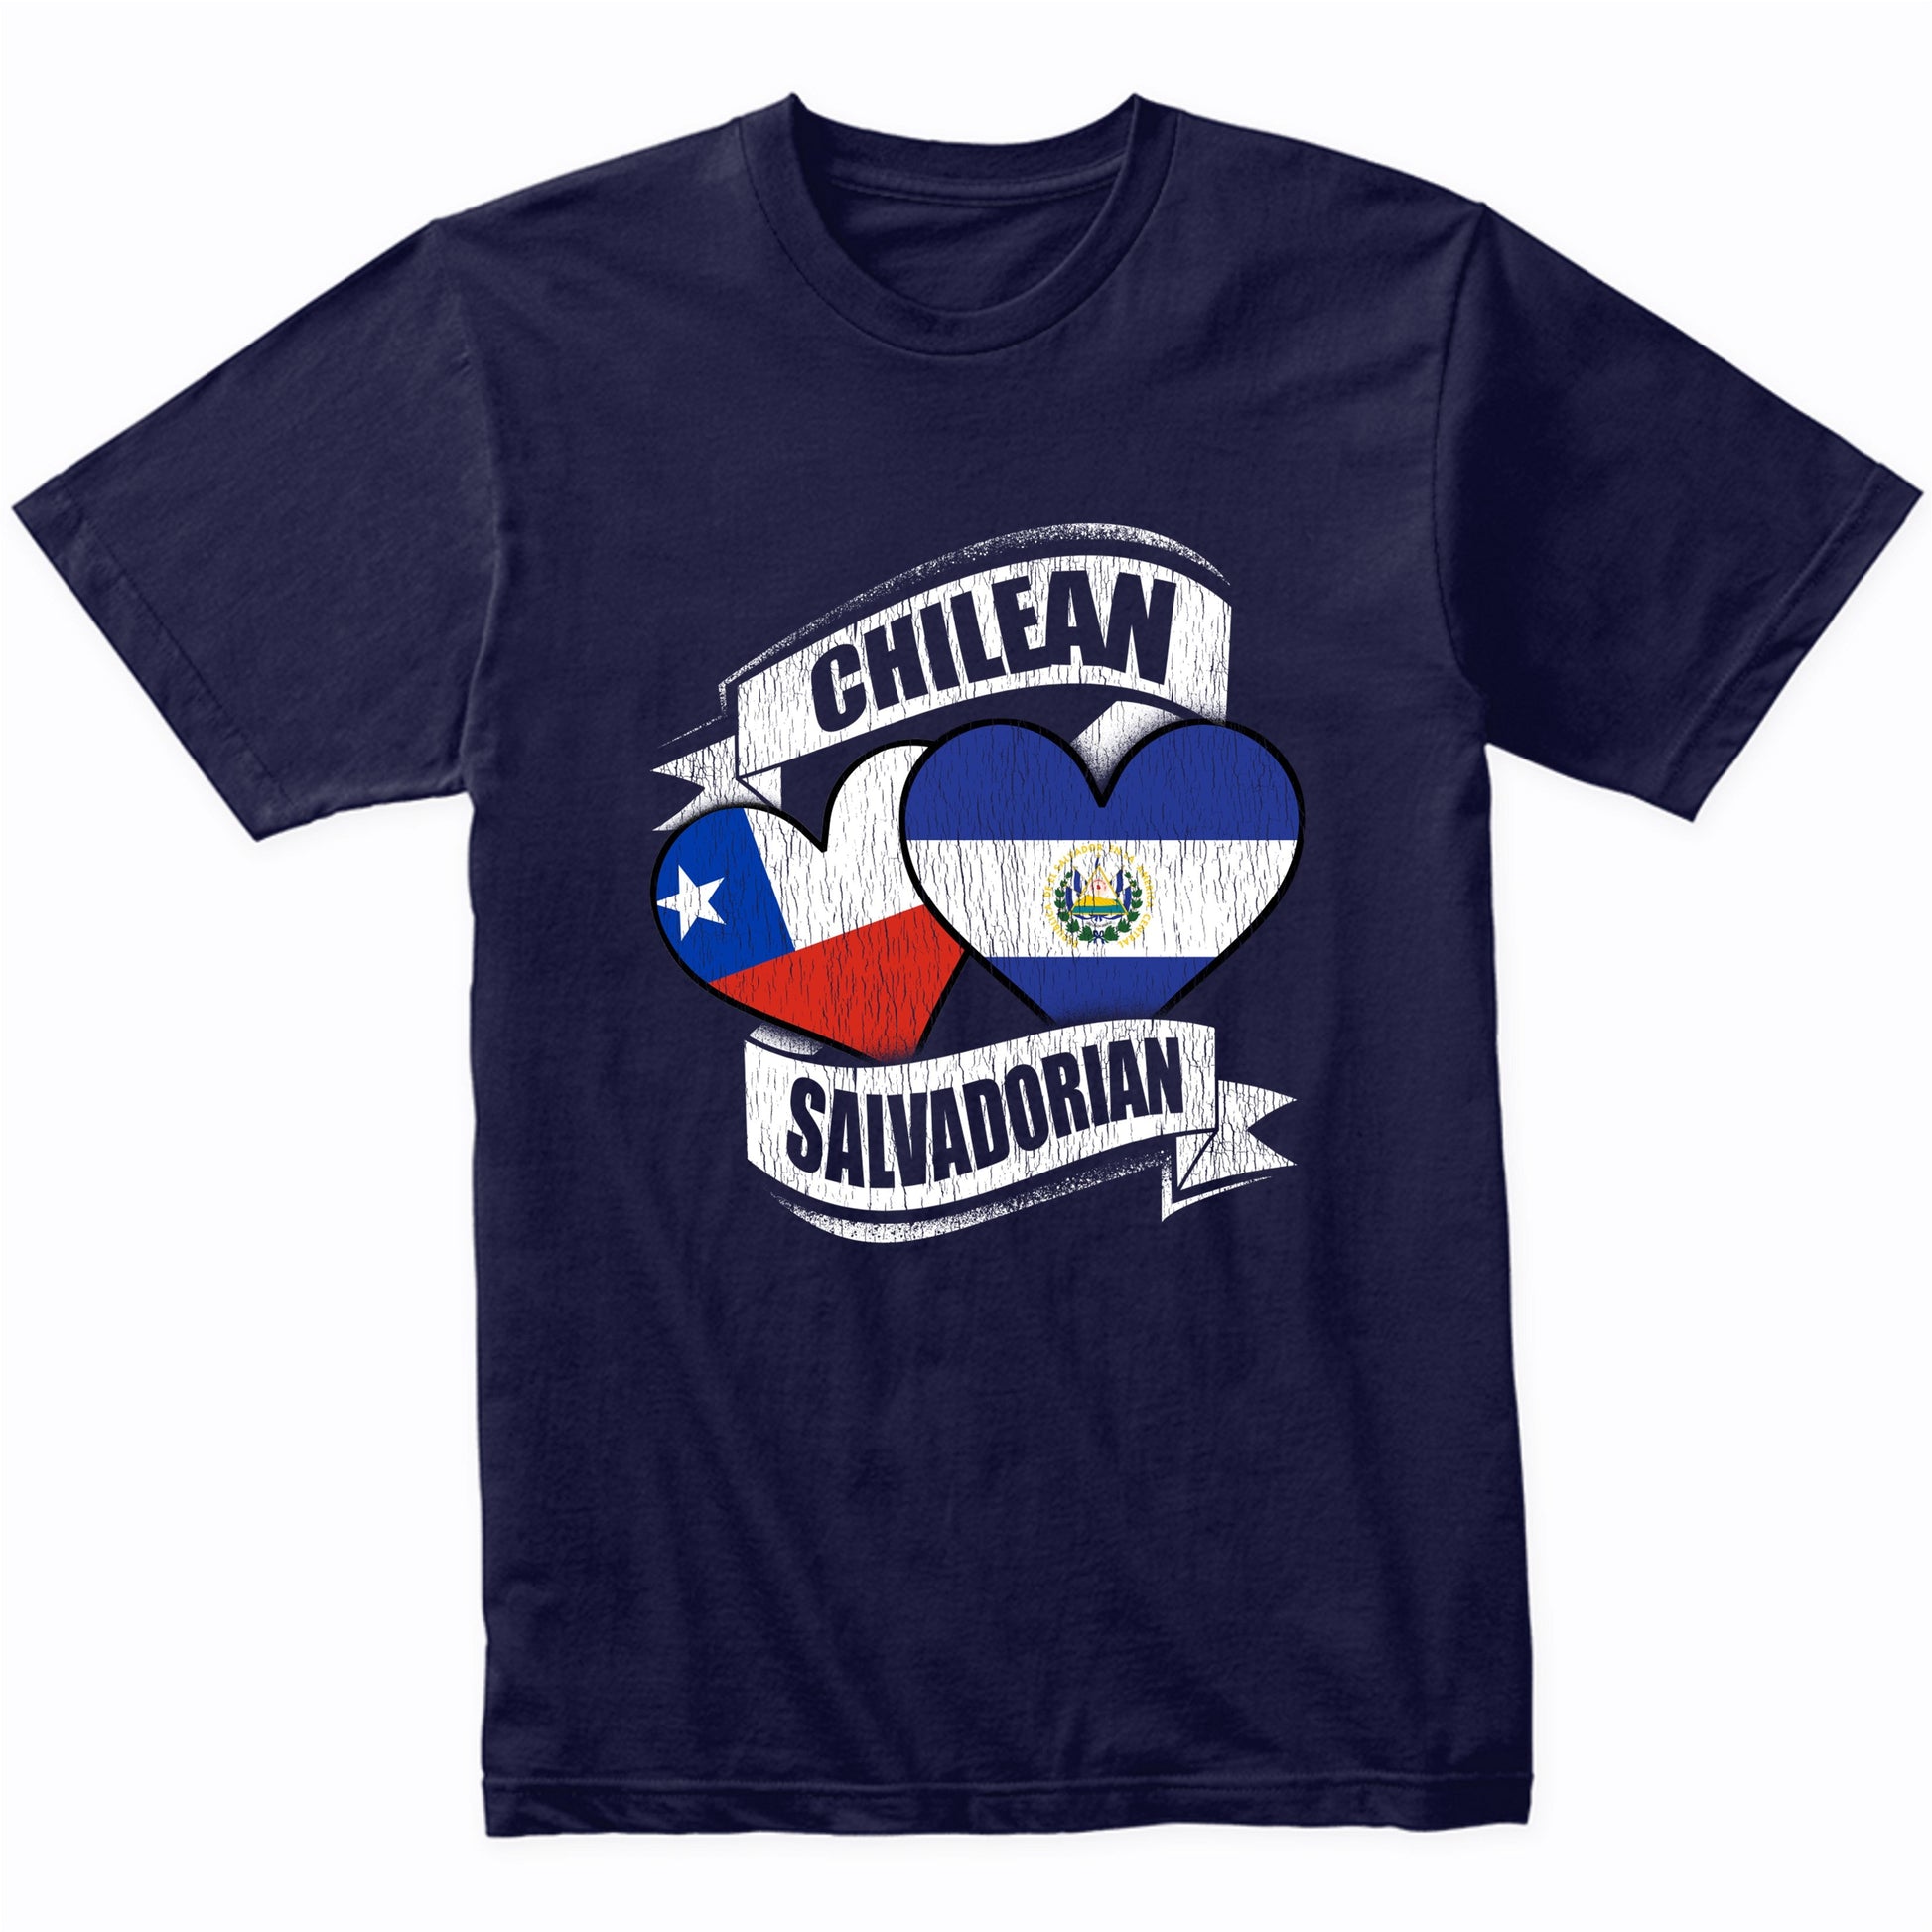 Chilean Salvadorian Hearts Chile El Salvador Flags T-Shirt